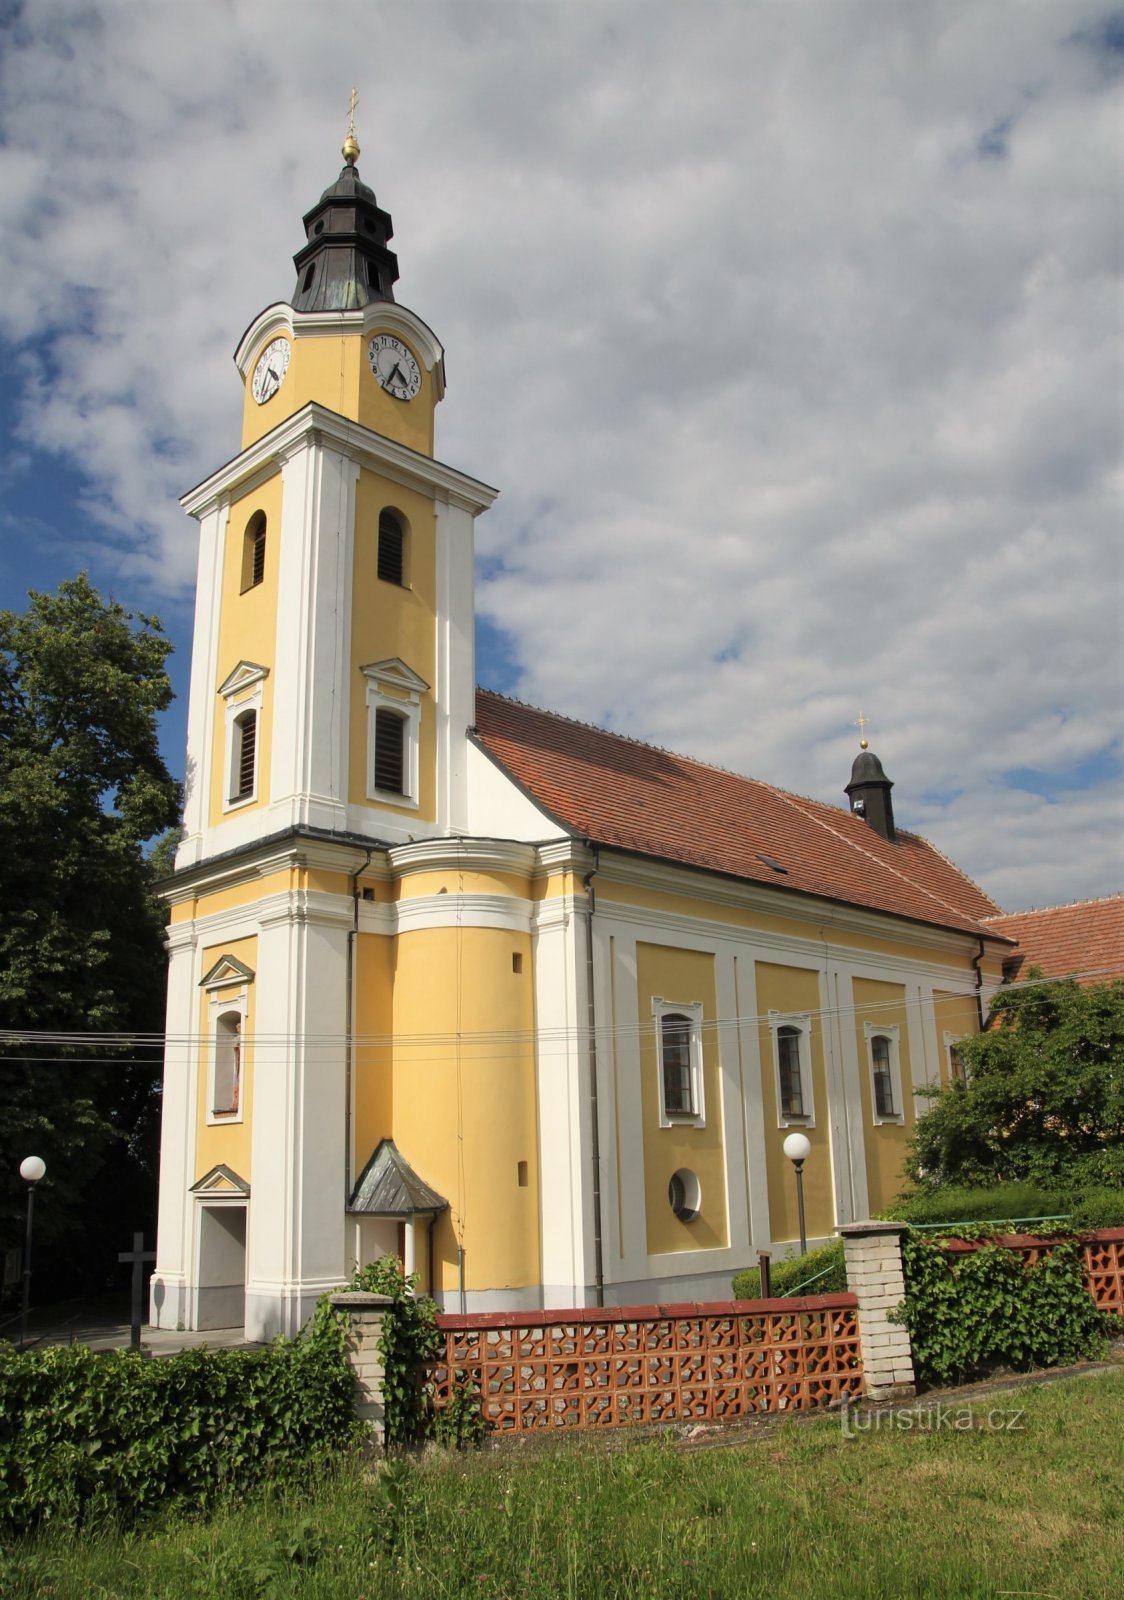 Mutěnice - nhà thờ St. Catherine